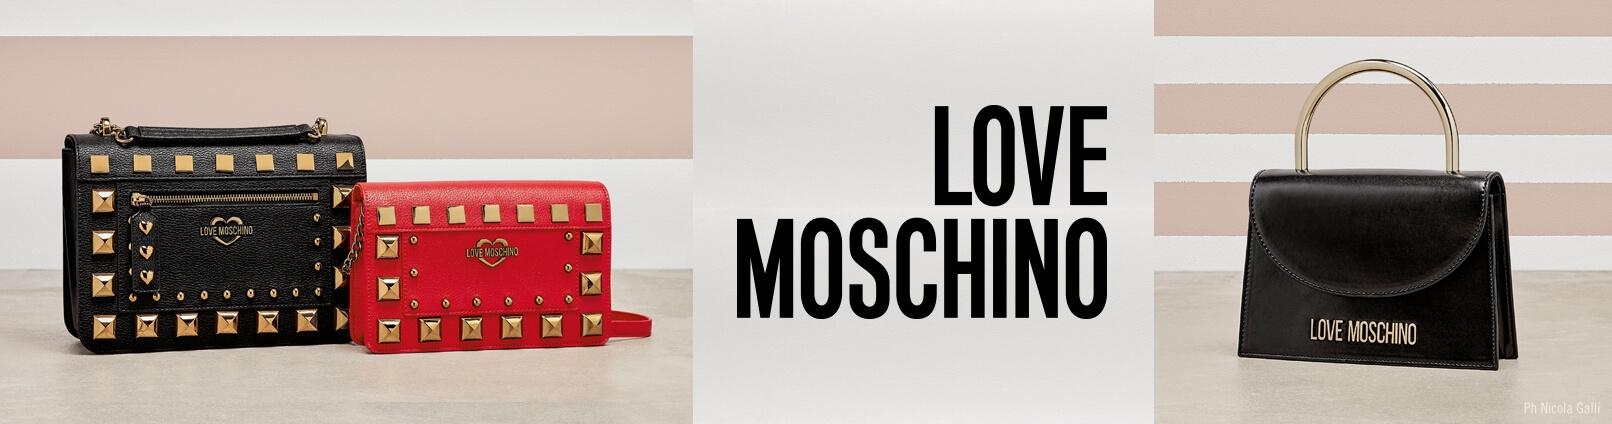 Love Moschino Bags \u0026 Backpacks - shop 